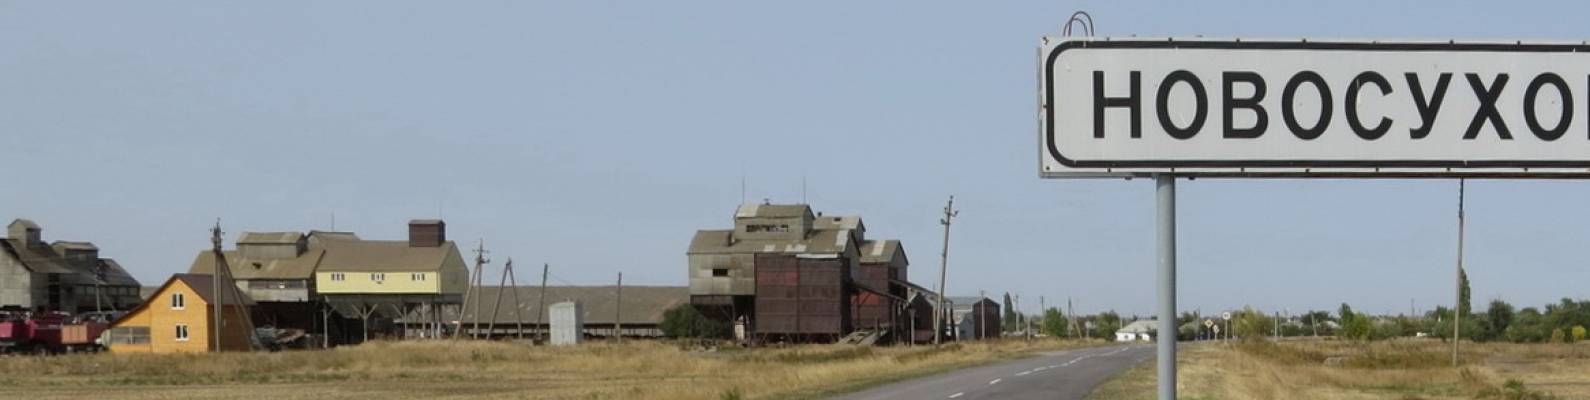  поселок Новосуховый